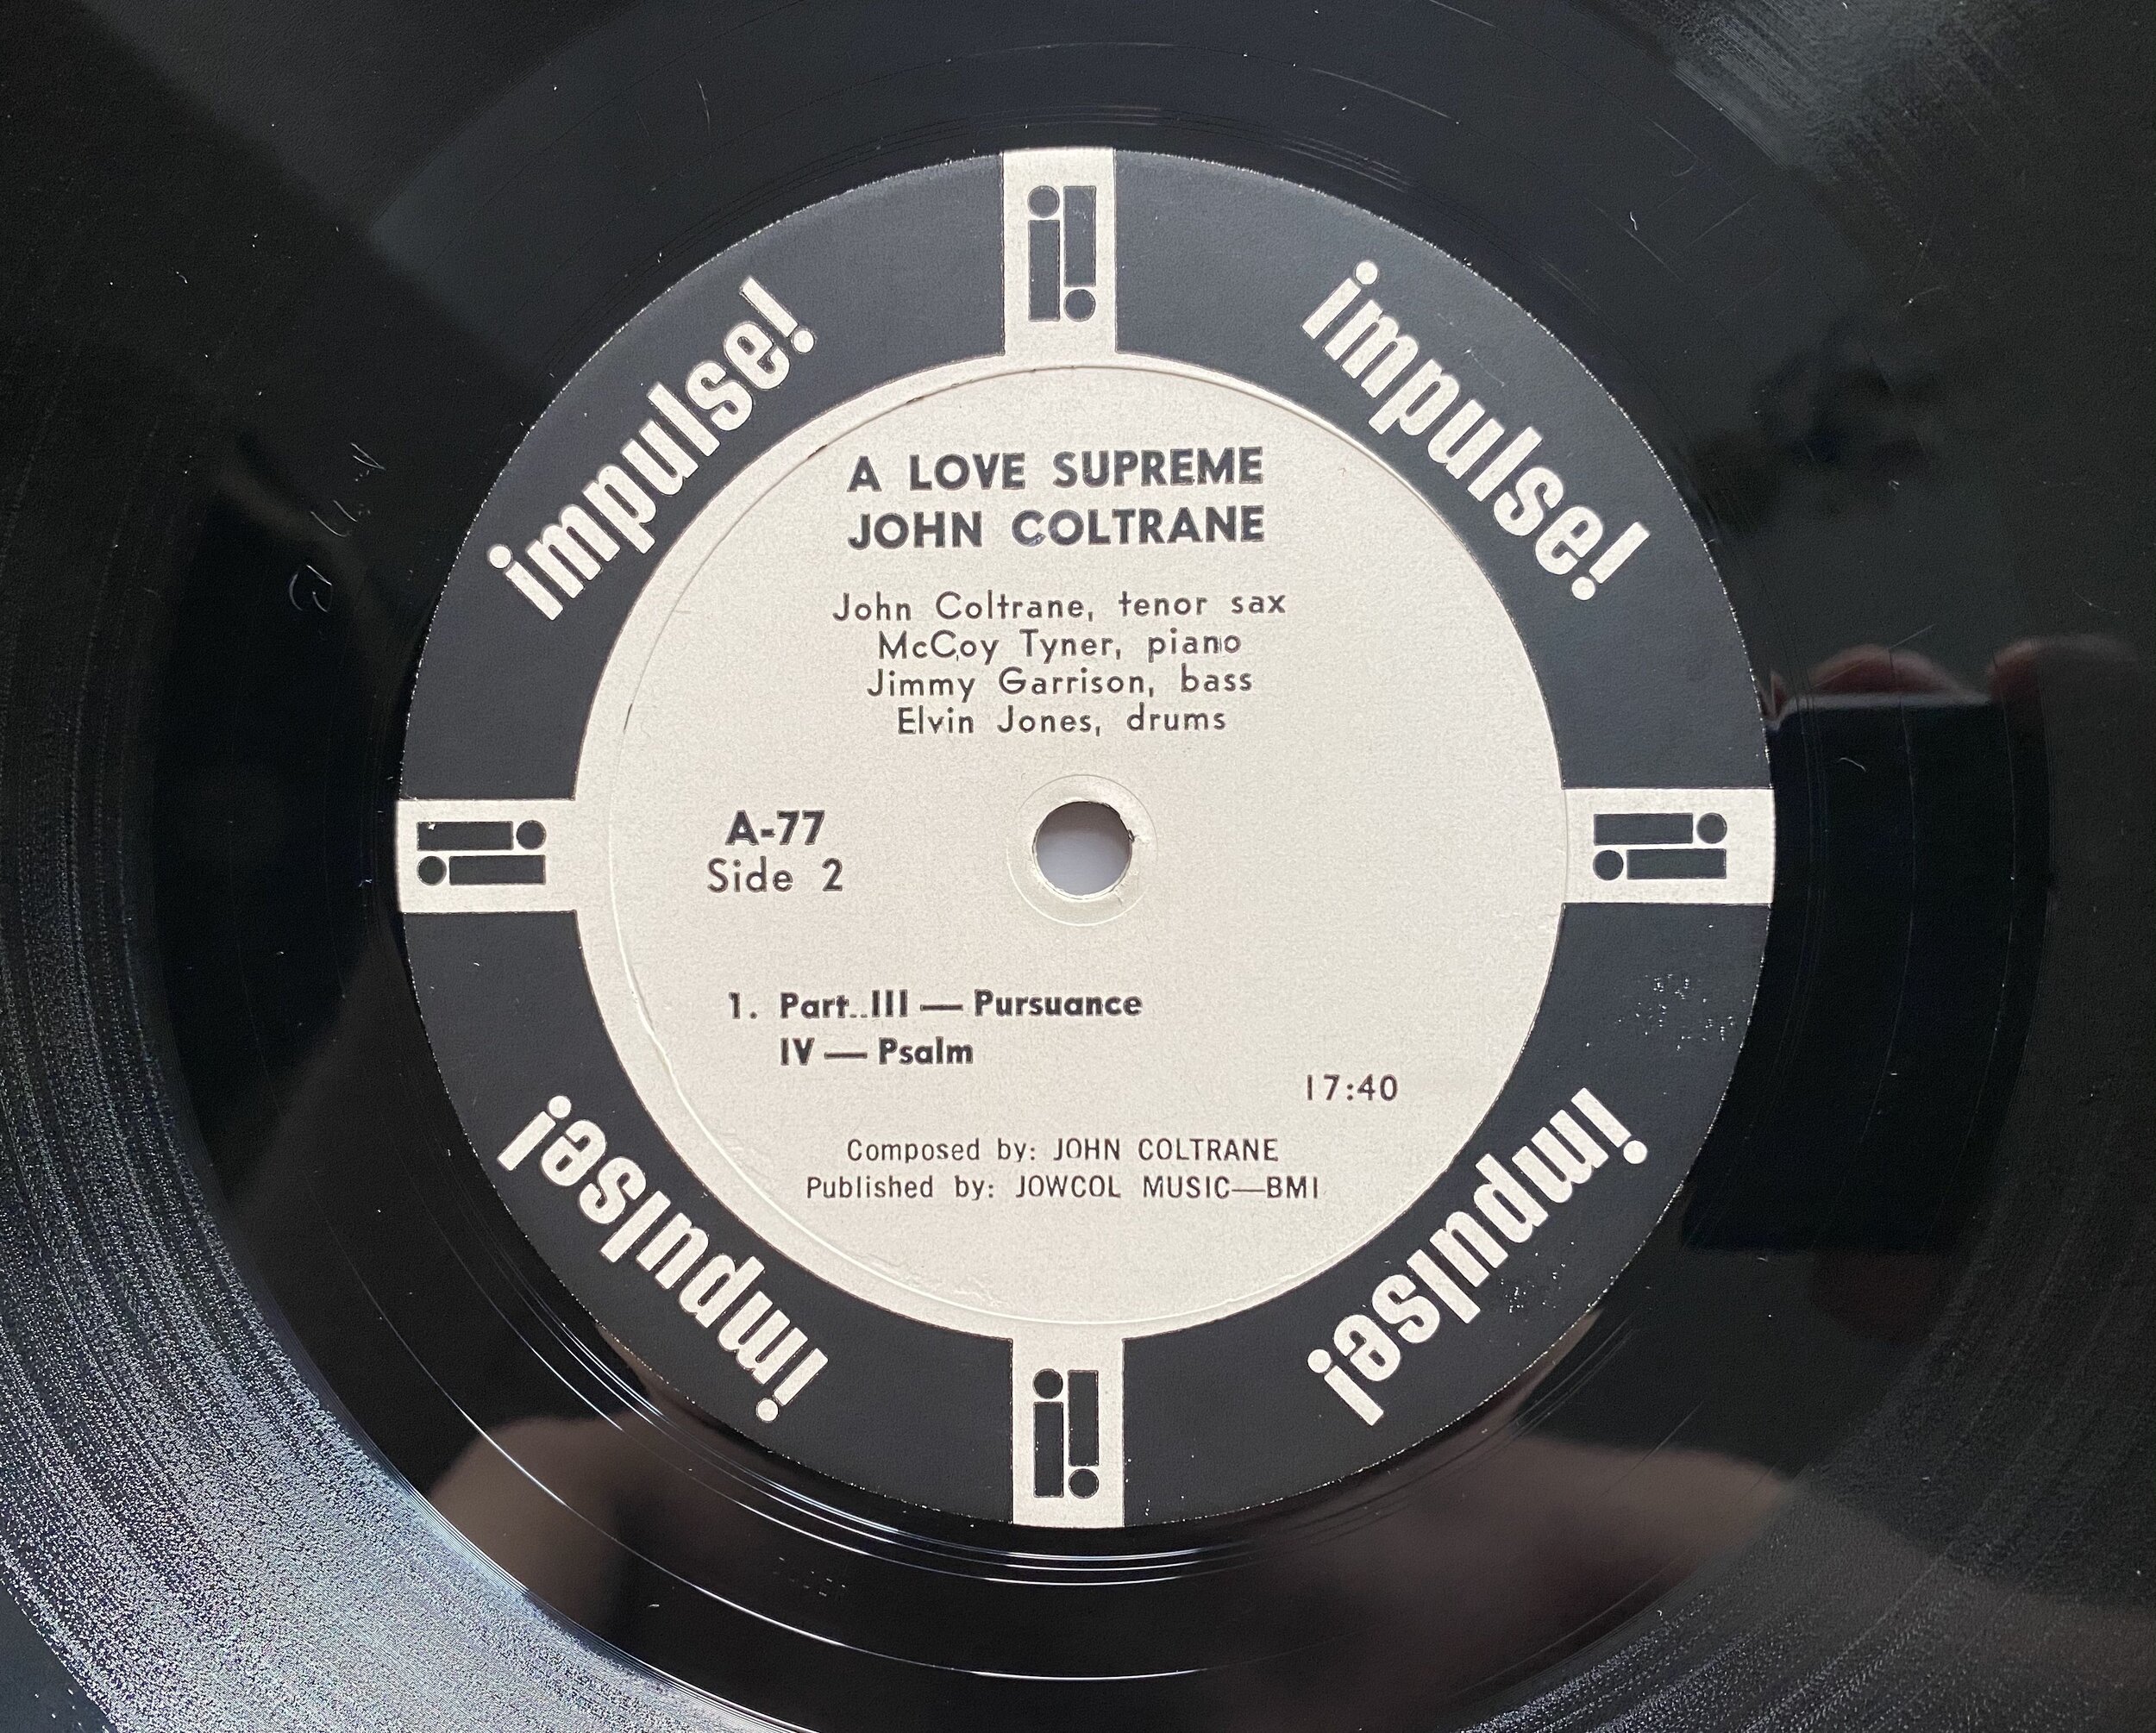 lomme ødelagte gøre ondt A Love Supreme" by John Coltrane on Impulse! A-77 — FW Rare Jazz Vinyl  Collector